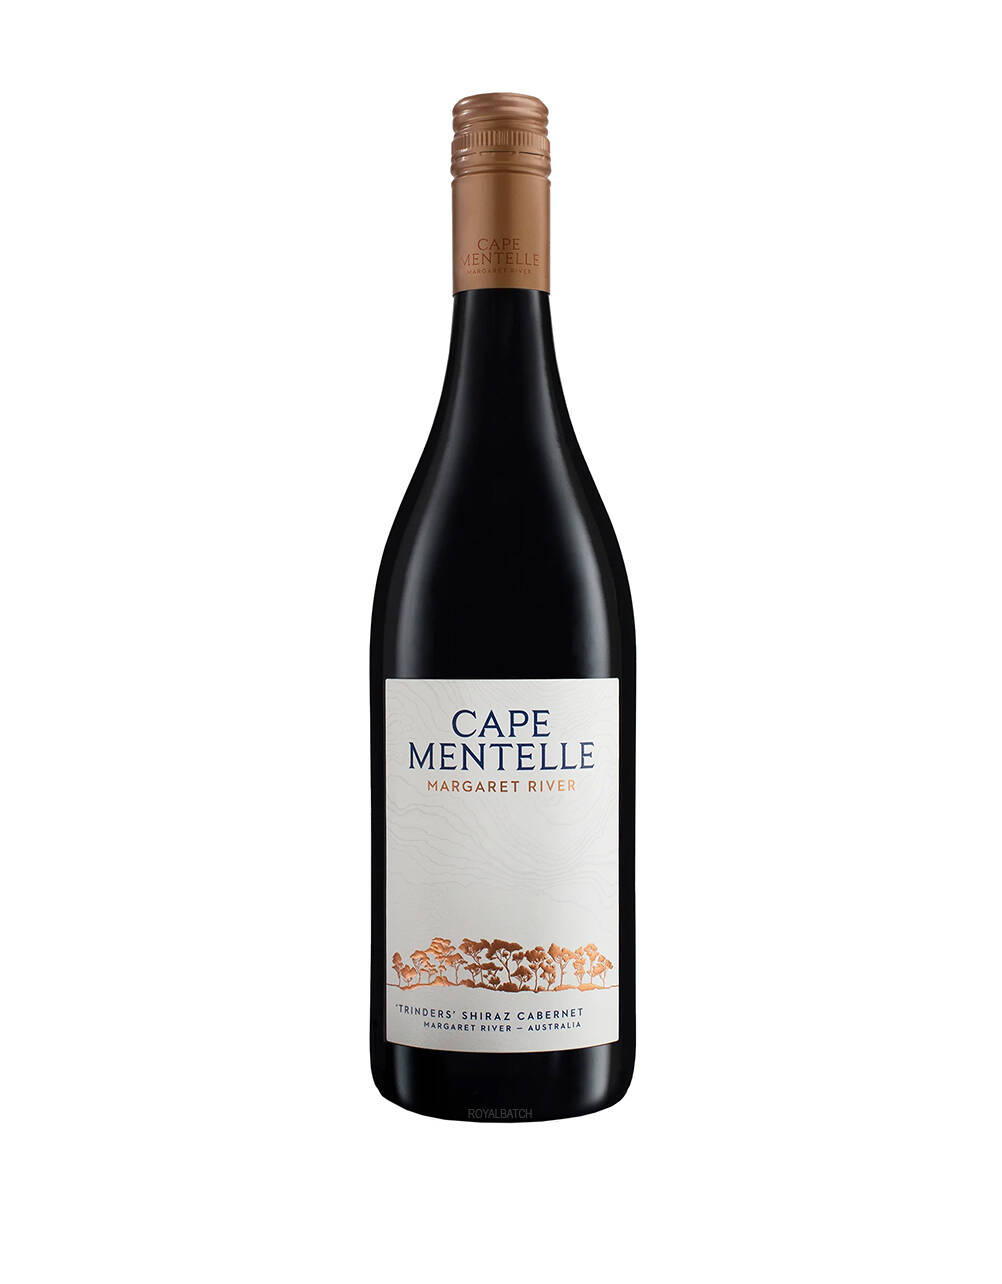 Cape Mentelle Margaret River Shiraz Cabernet Wine 2018